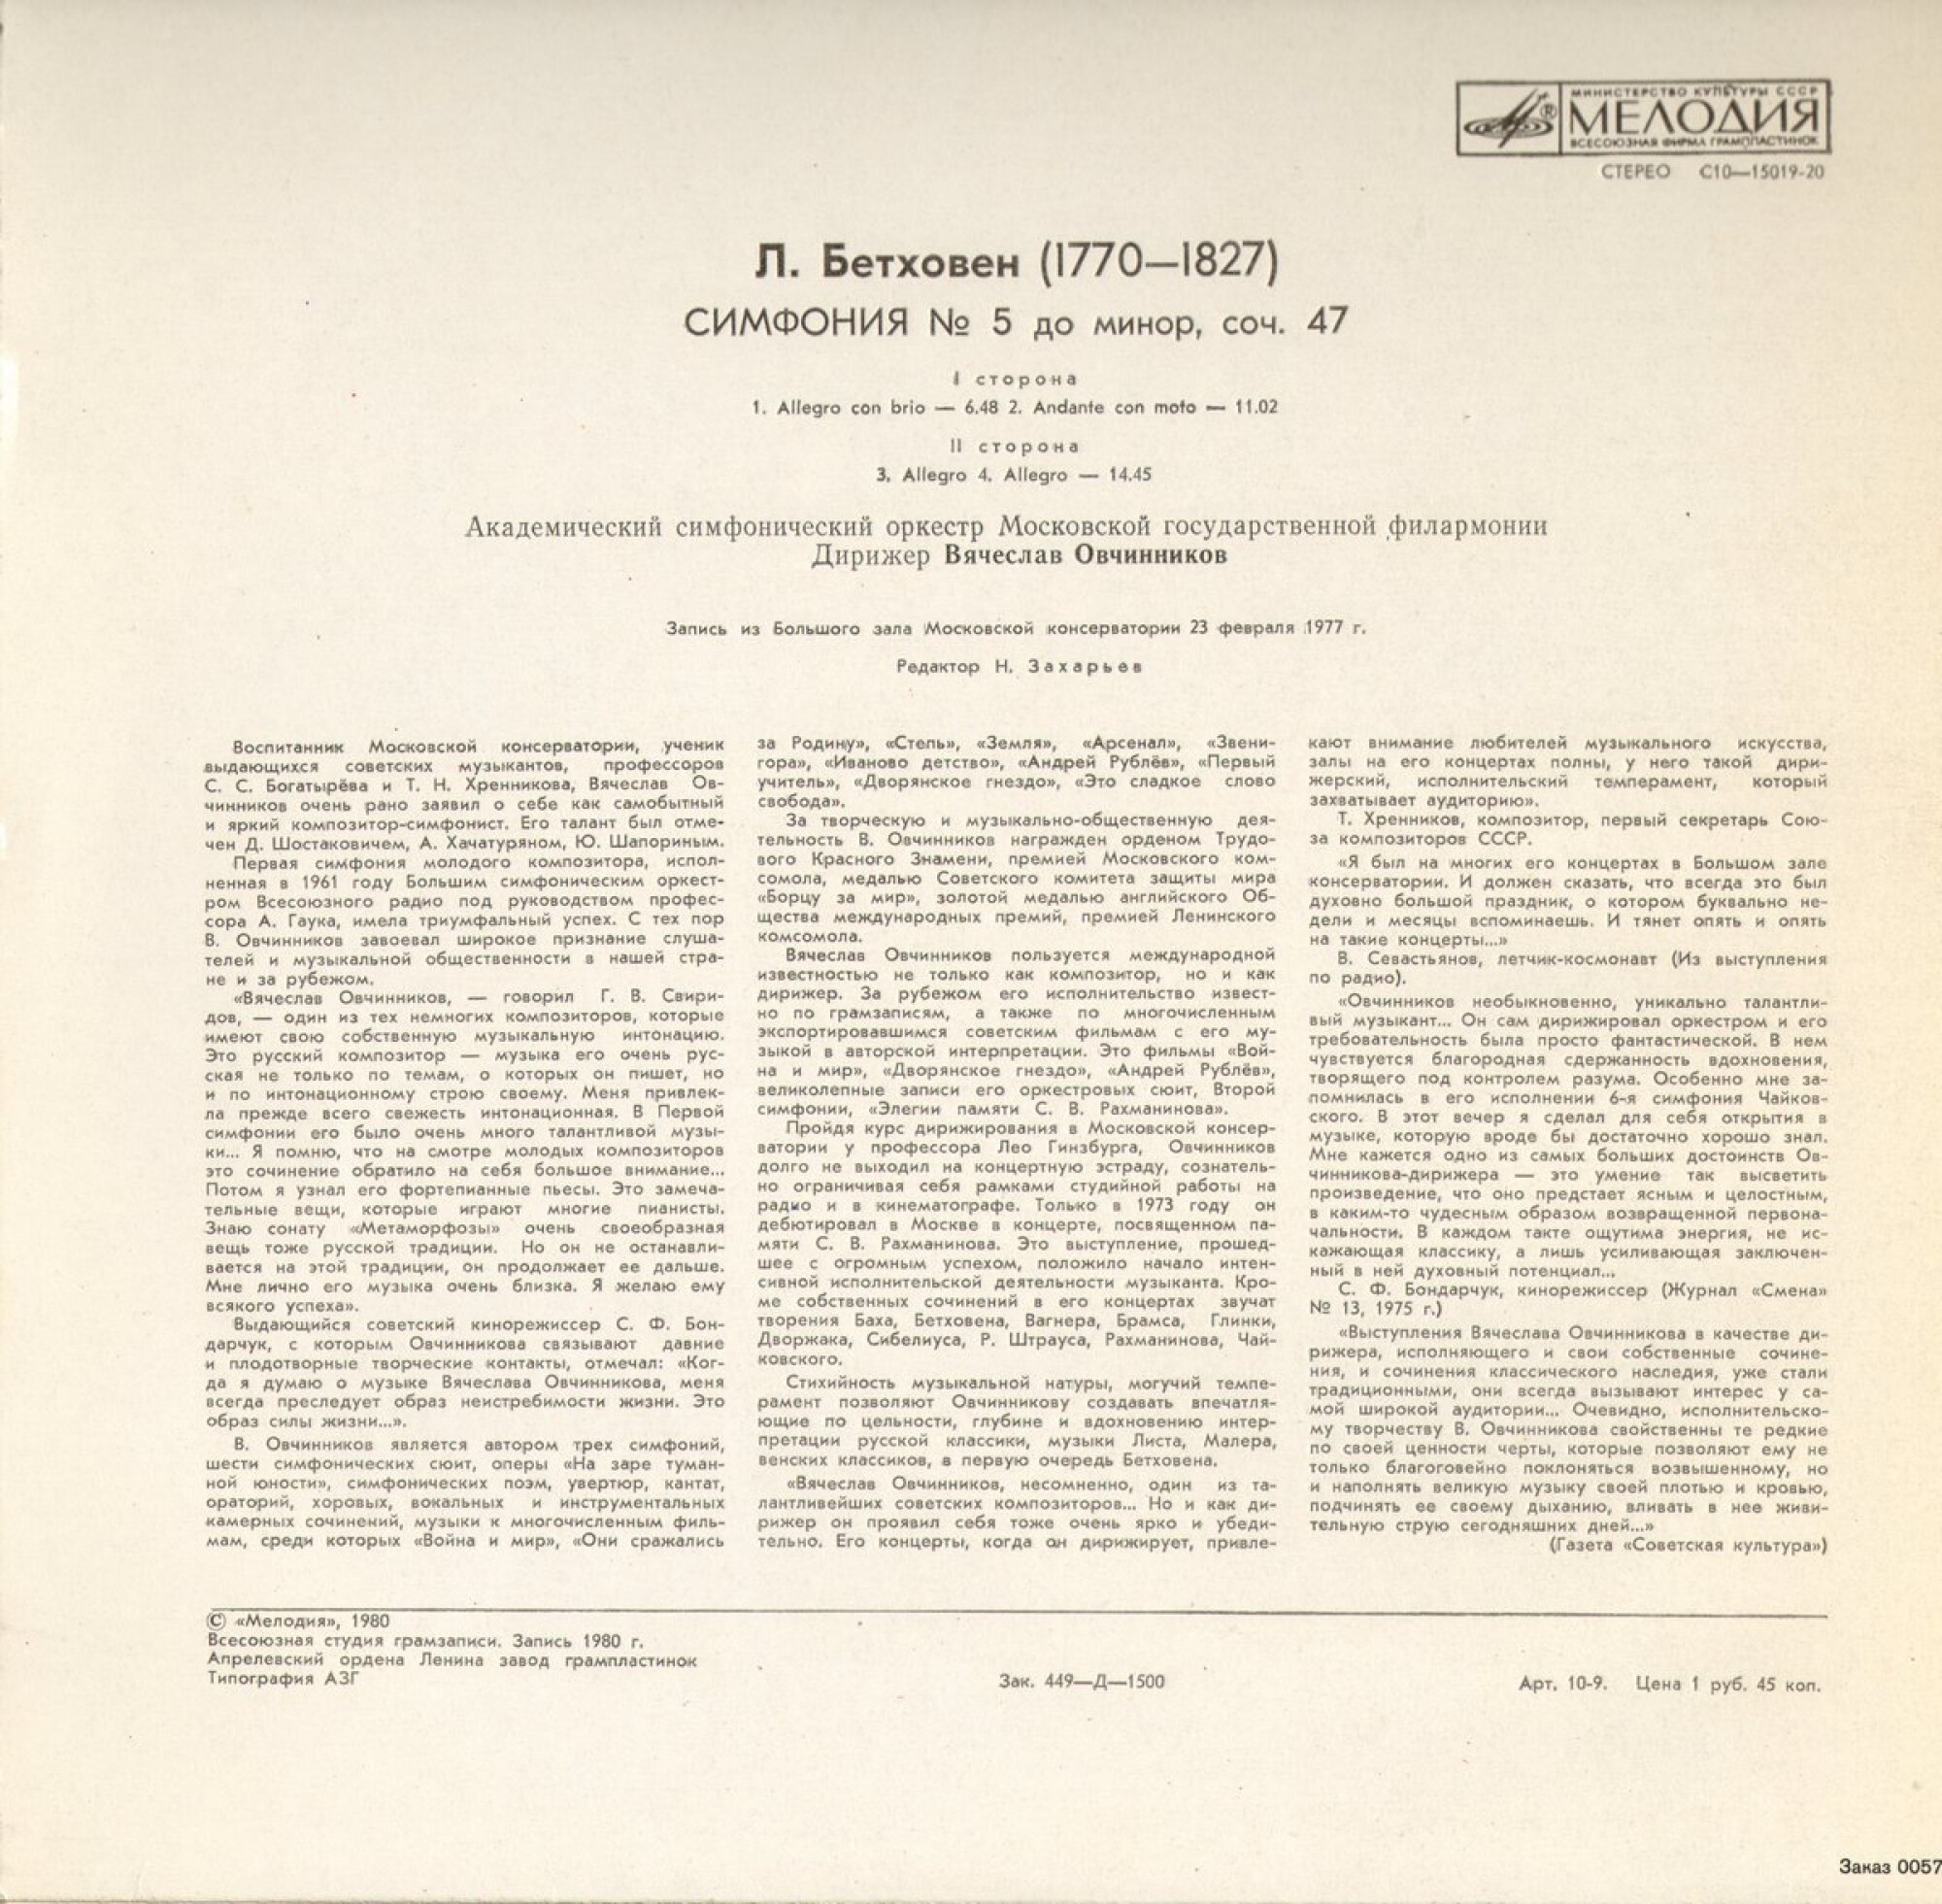 Л. БЕТХОВЕН (1770-1827): Симфония № 5 до минор, соч. 47 (В. Овчинников)